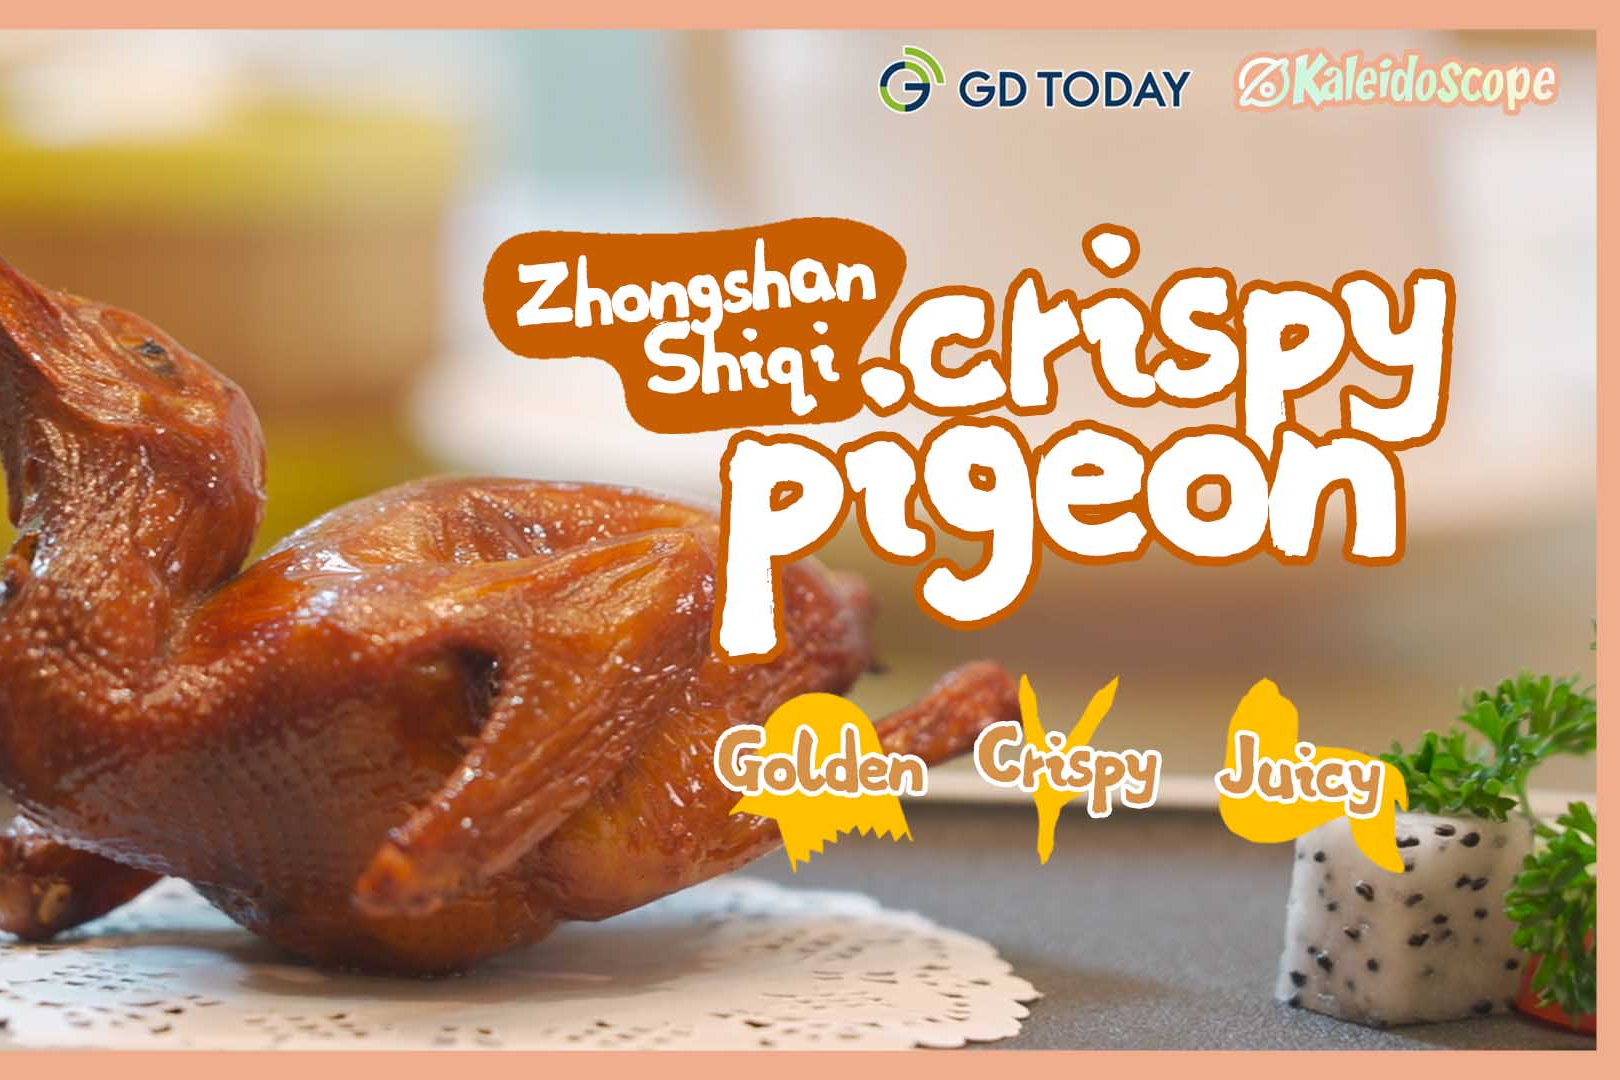 Zhongshan Shiqi crispy pigeon: Golden and juicy